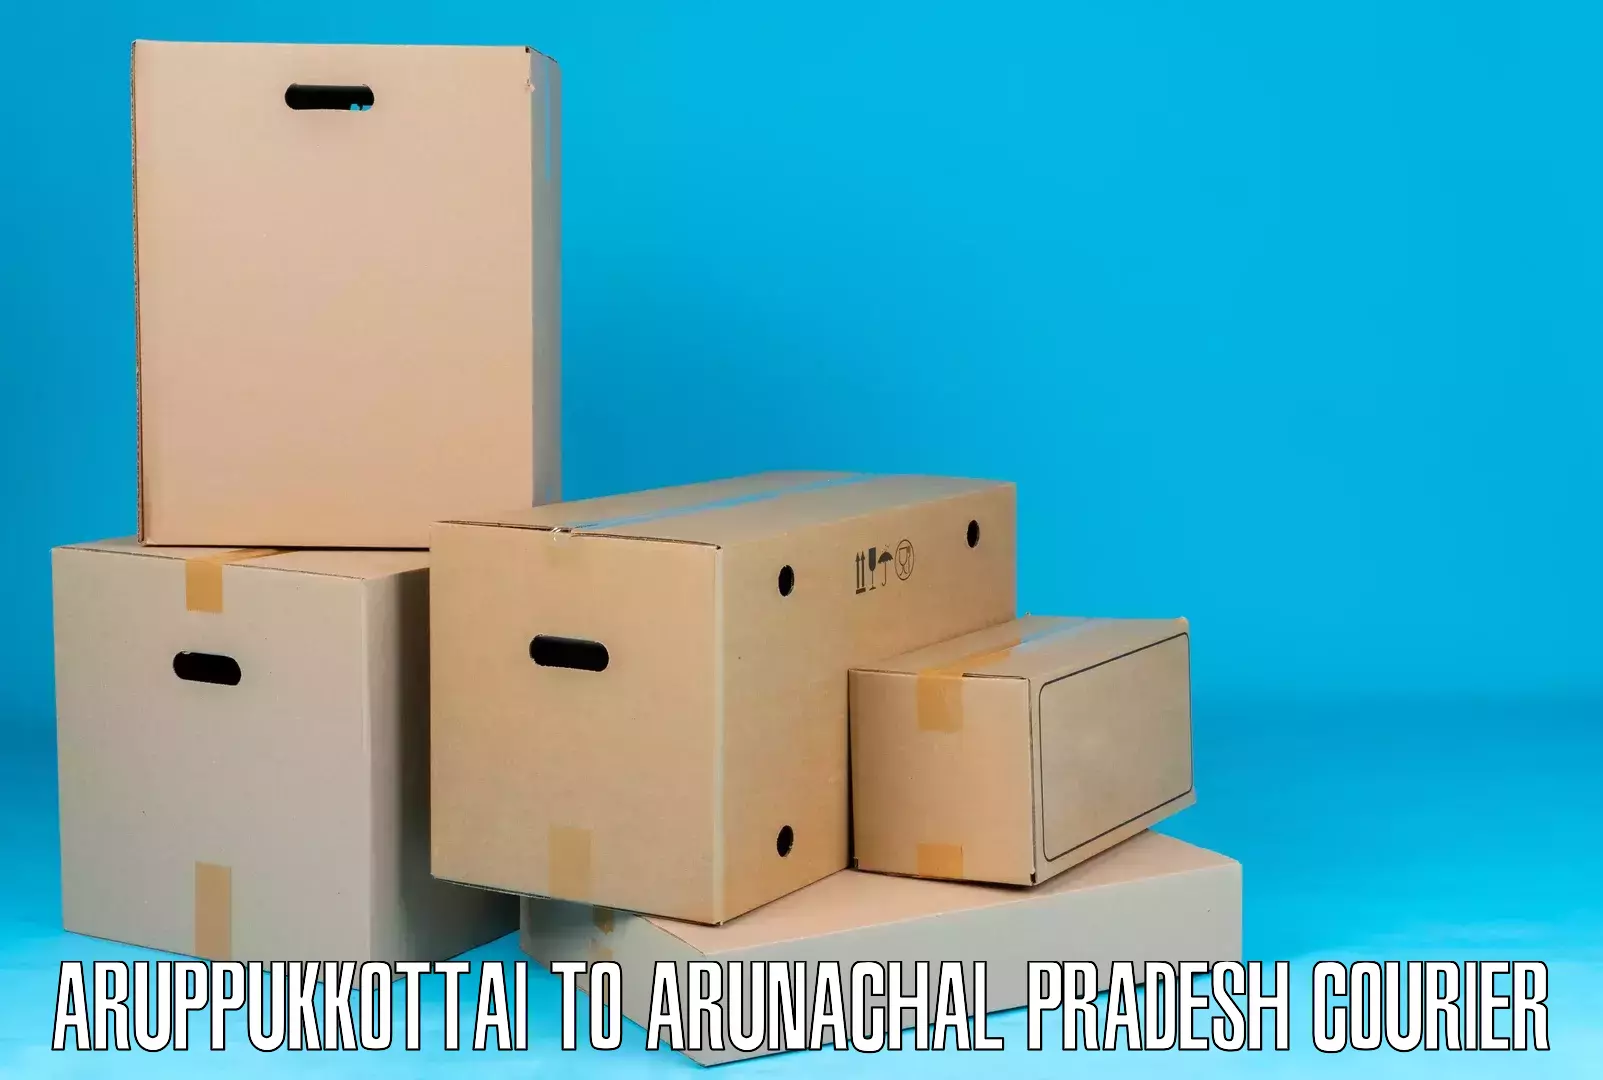 Express mail solutions Aruppukkottai to Arunachal Pradesh